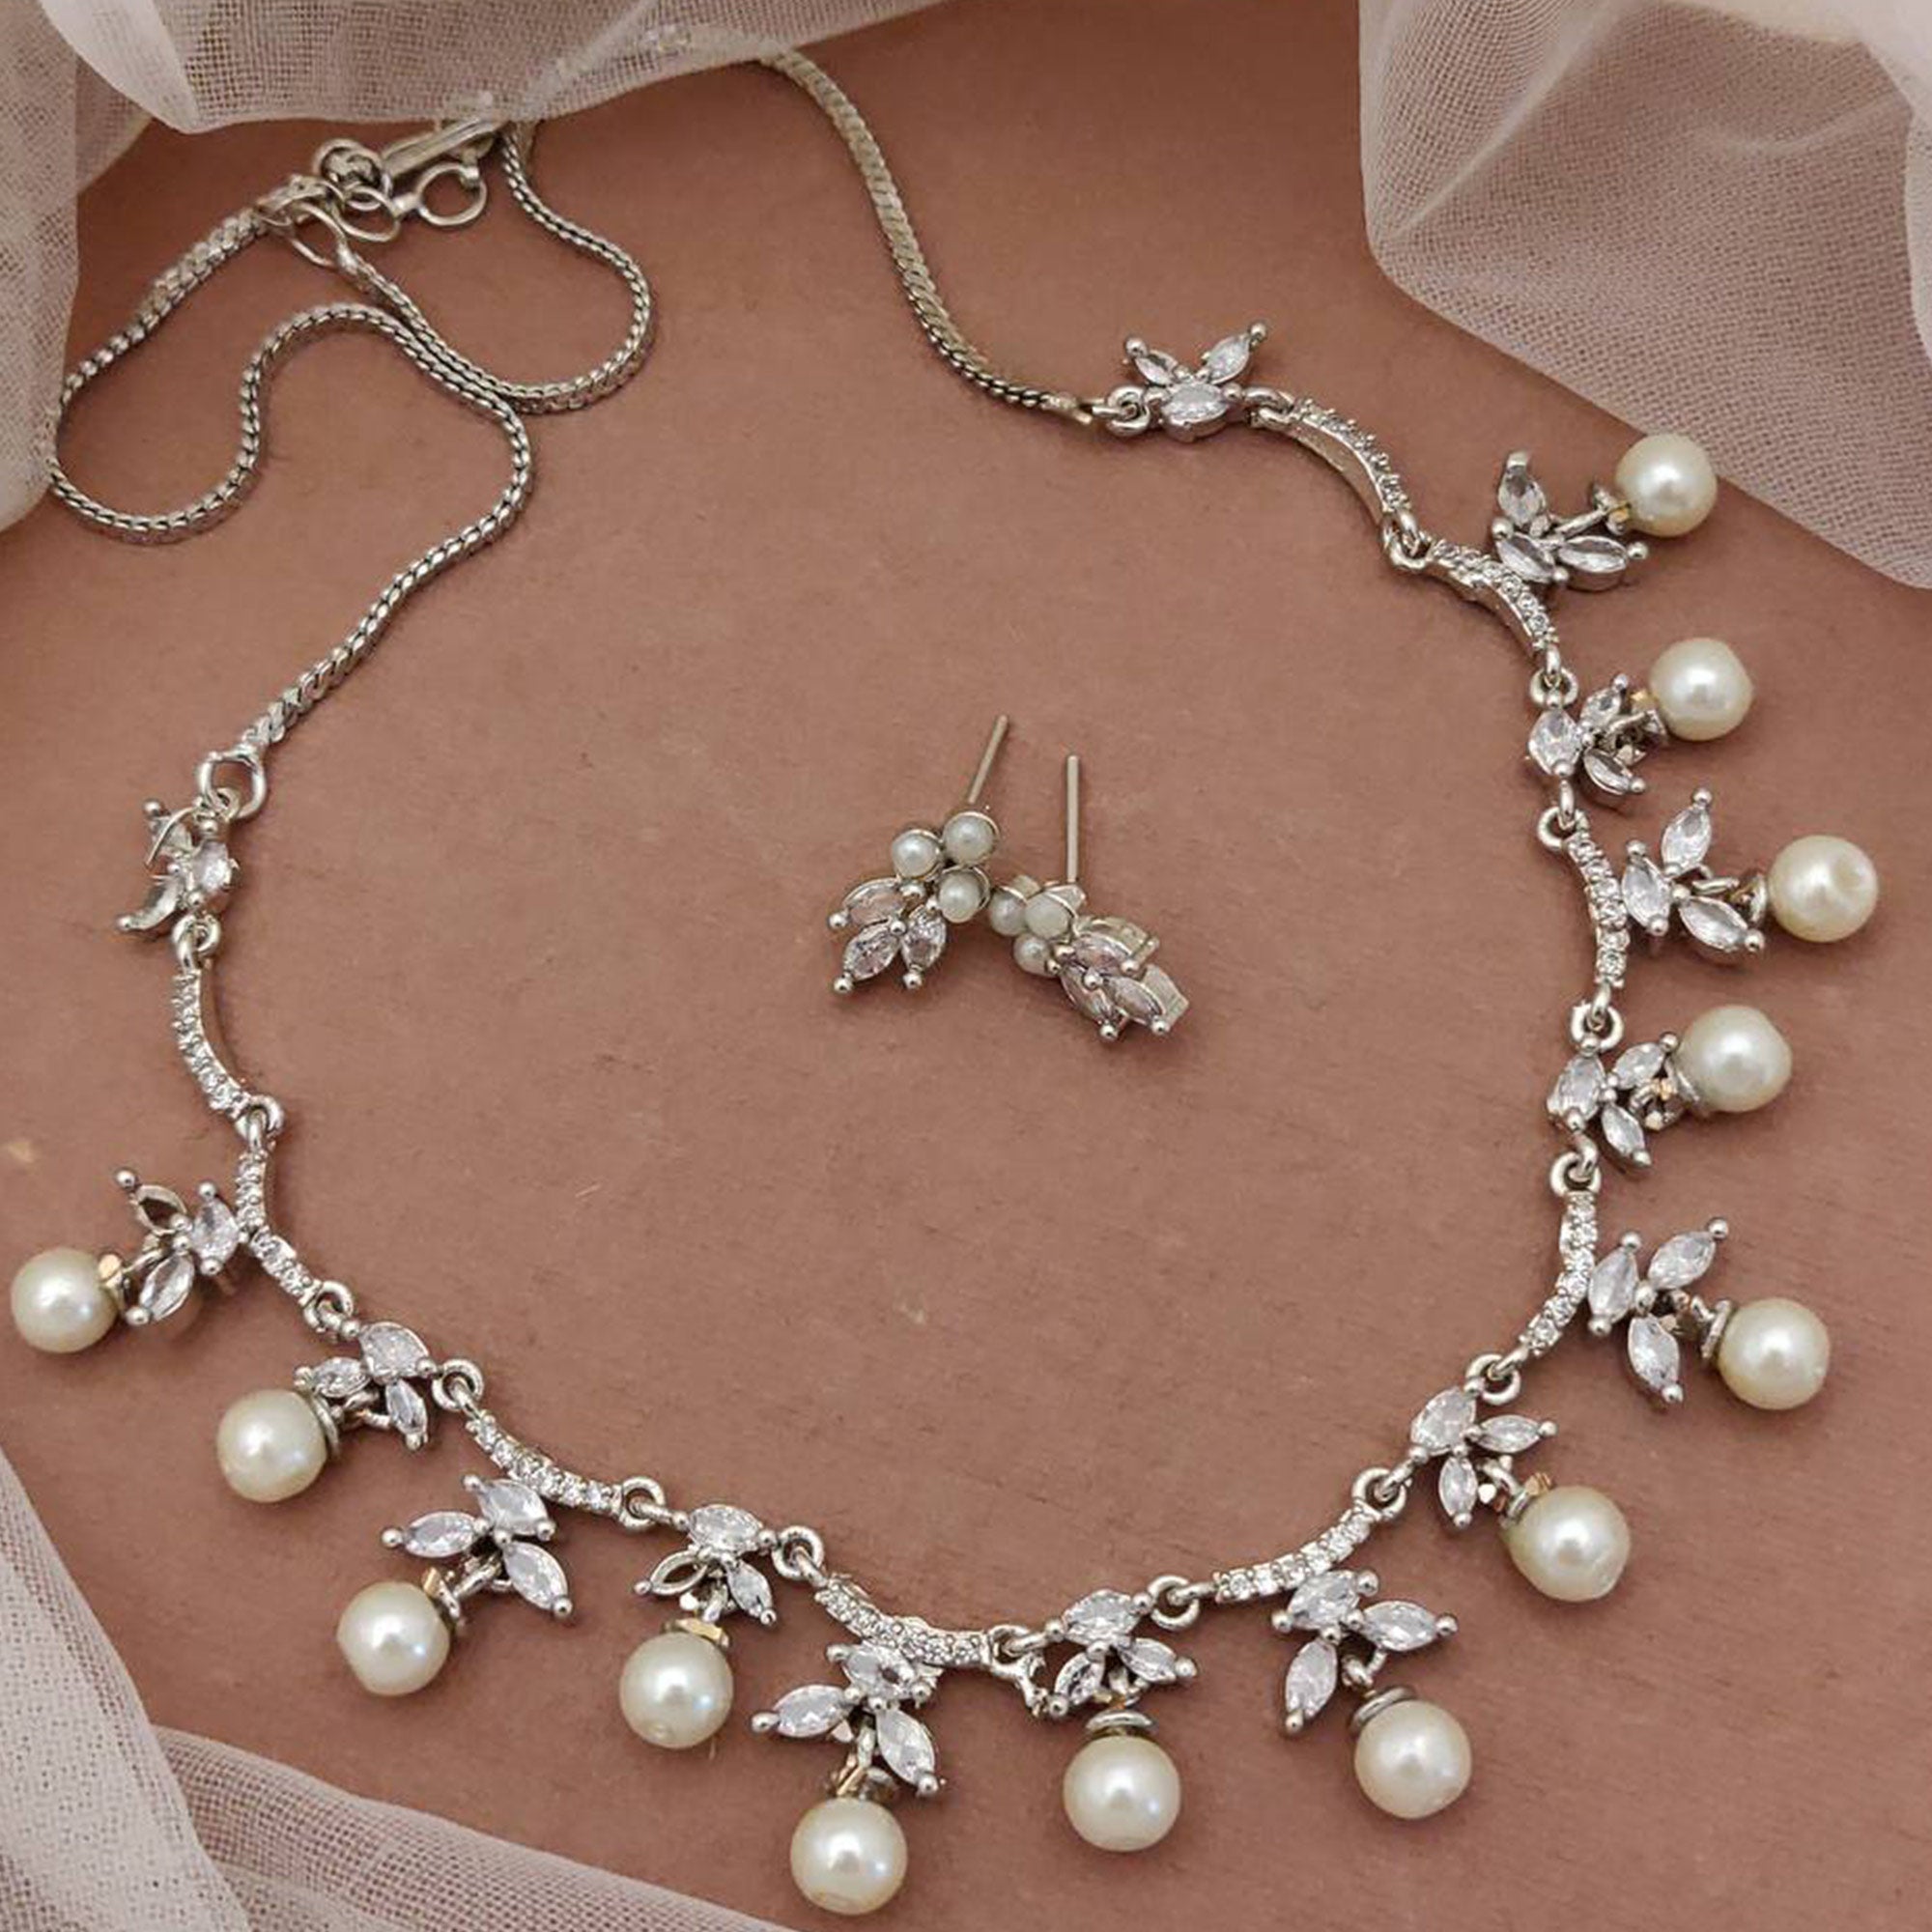 Silver Colored American Diamond Premium Alloy Necklace set